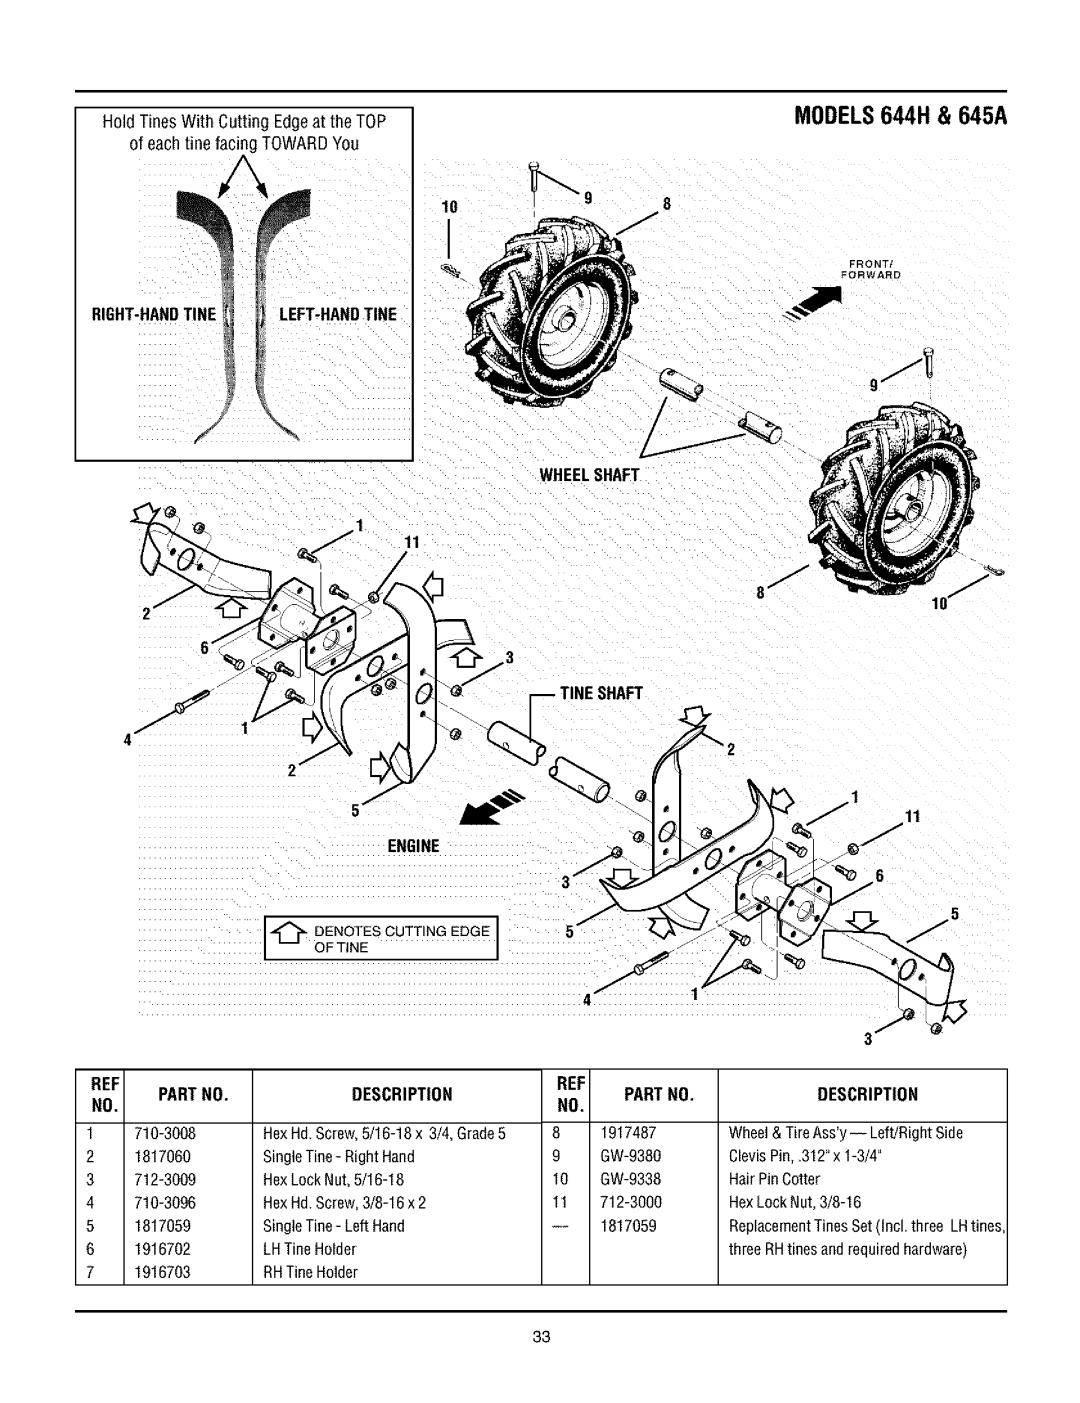 Troy-Bilt manual MODELS644H & 645A, Right-Handtine Left-Handtine, Engine, Wheelshaft Tine Shaft, Description, Partno 